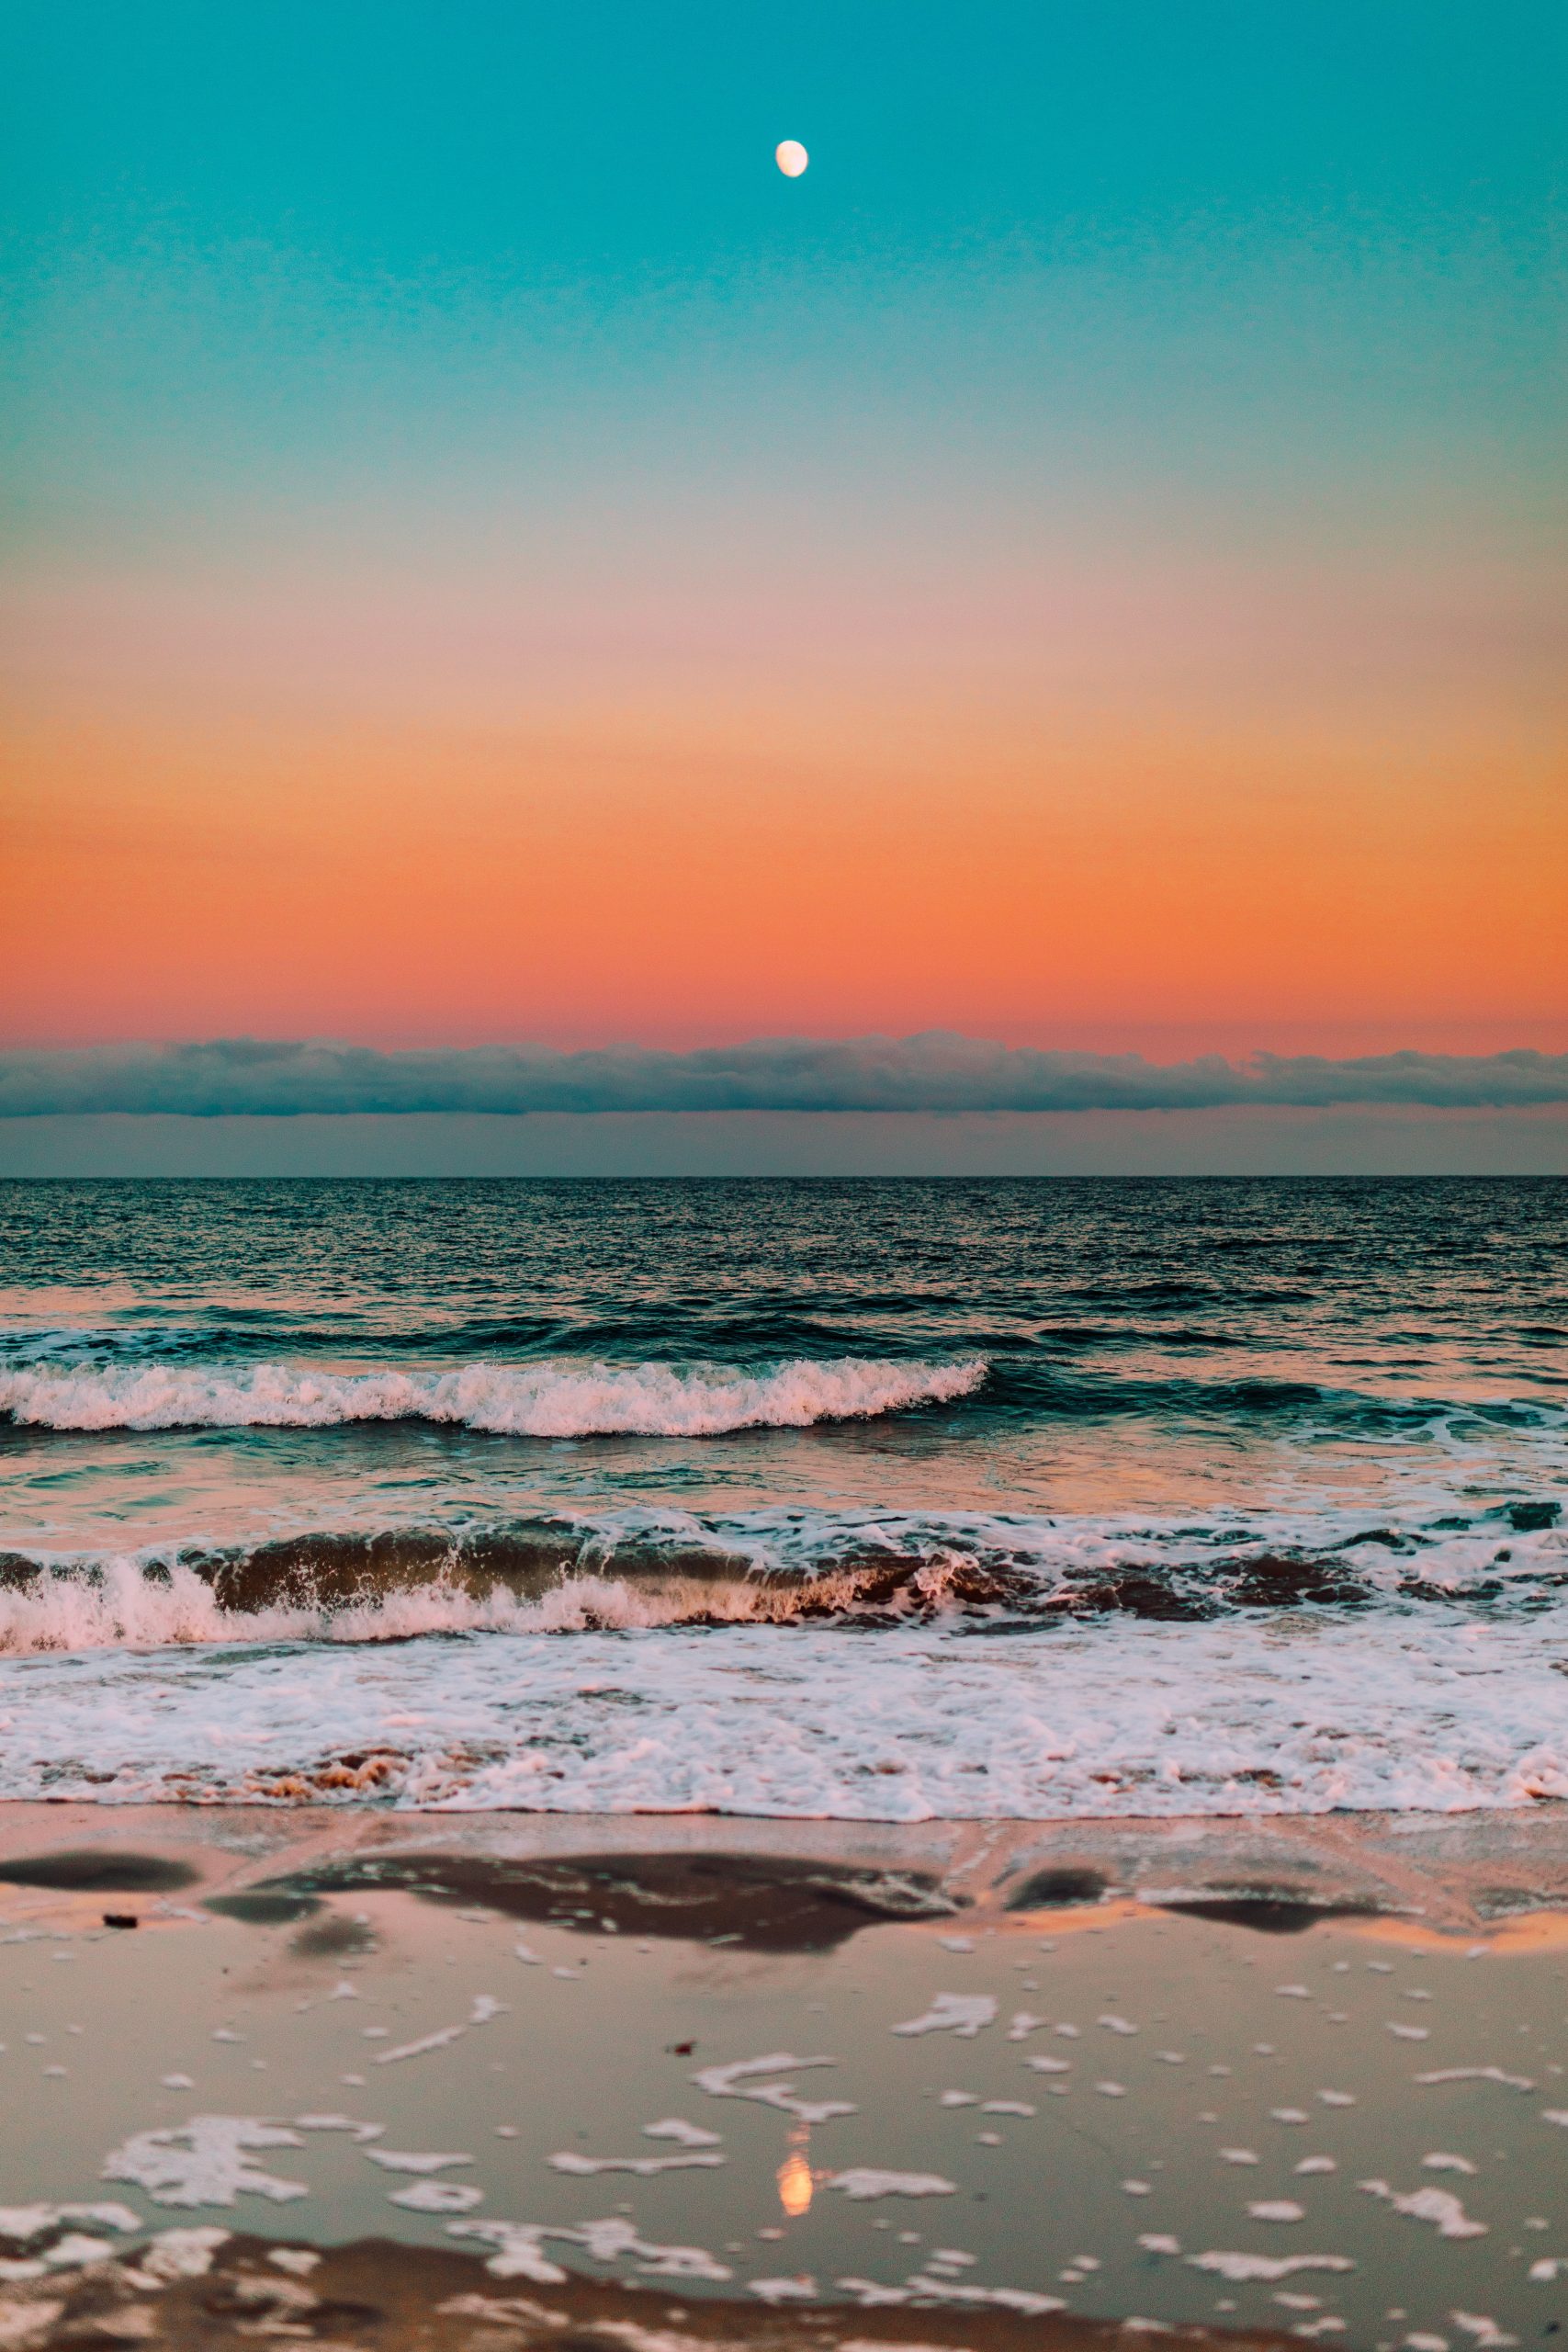 Biển: Hãy xem bức ảnh đẹp như tranh vẽ của biển xanh ngát, những con sóng nhỏ nhắn len lỏi vào bờ cát trắng mịn. Bức ảnh sẽ mang đến không khí tươi mát và sự yên tĩnh của biển cả cho bạn.